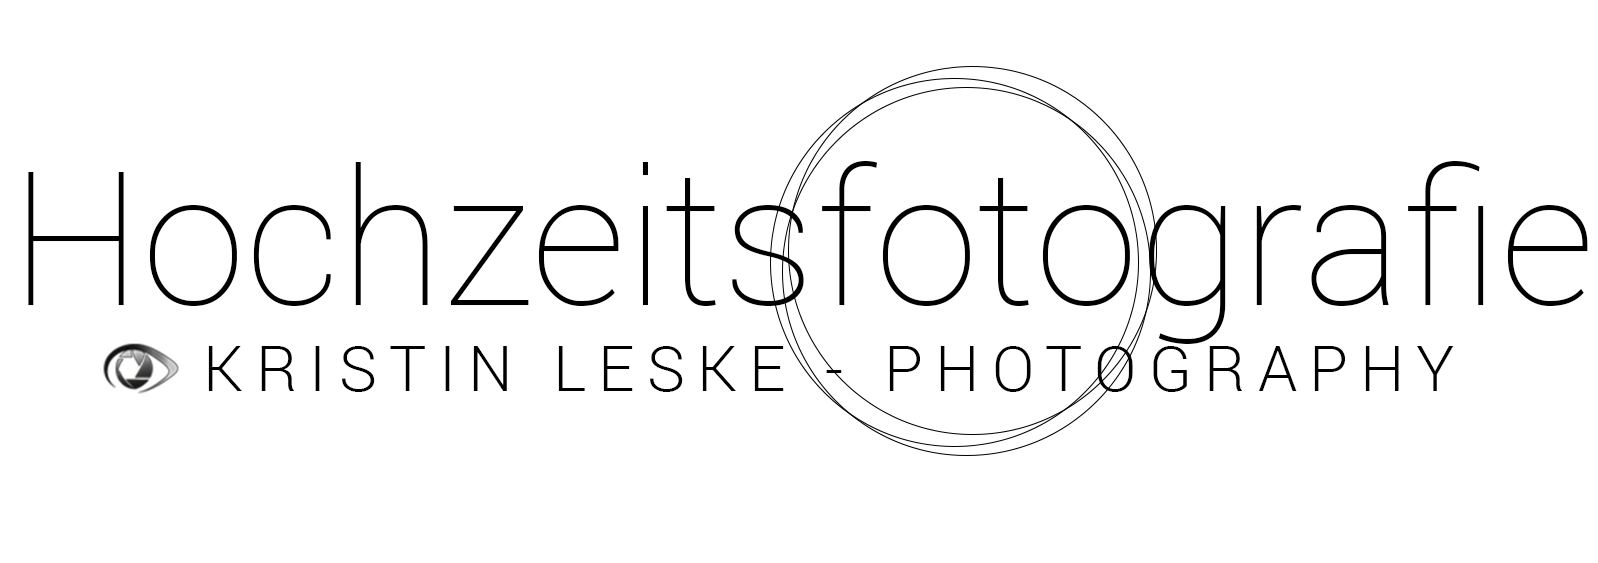 Kristin Leske - Hochzeitsfotograf in Nürnberg und Umgebung Moderne Hochzeitsfotos